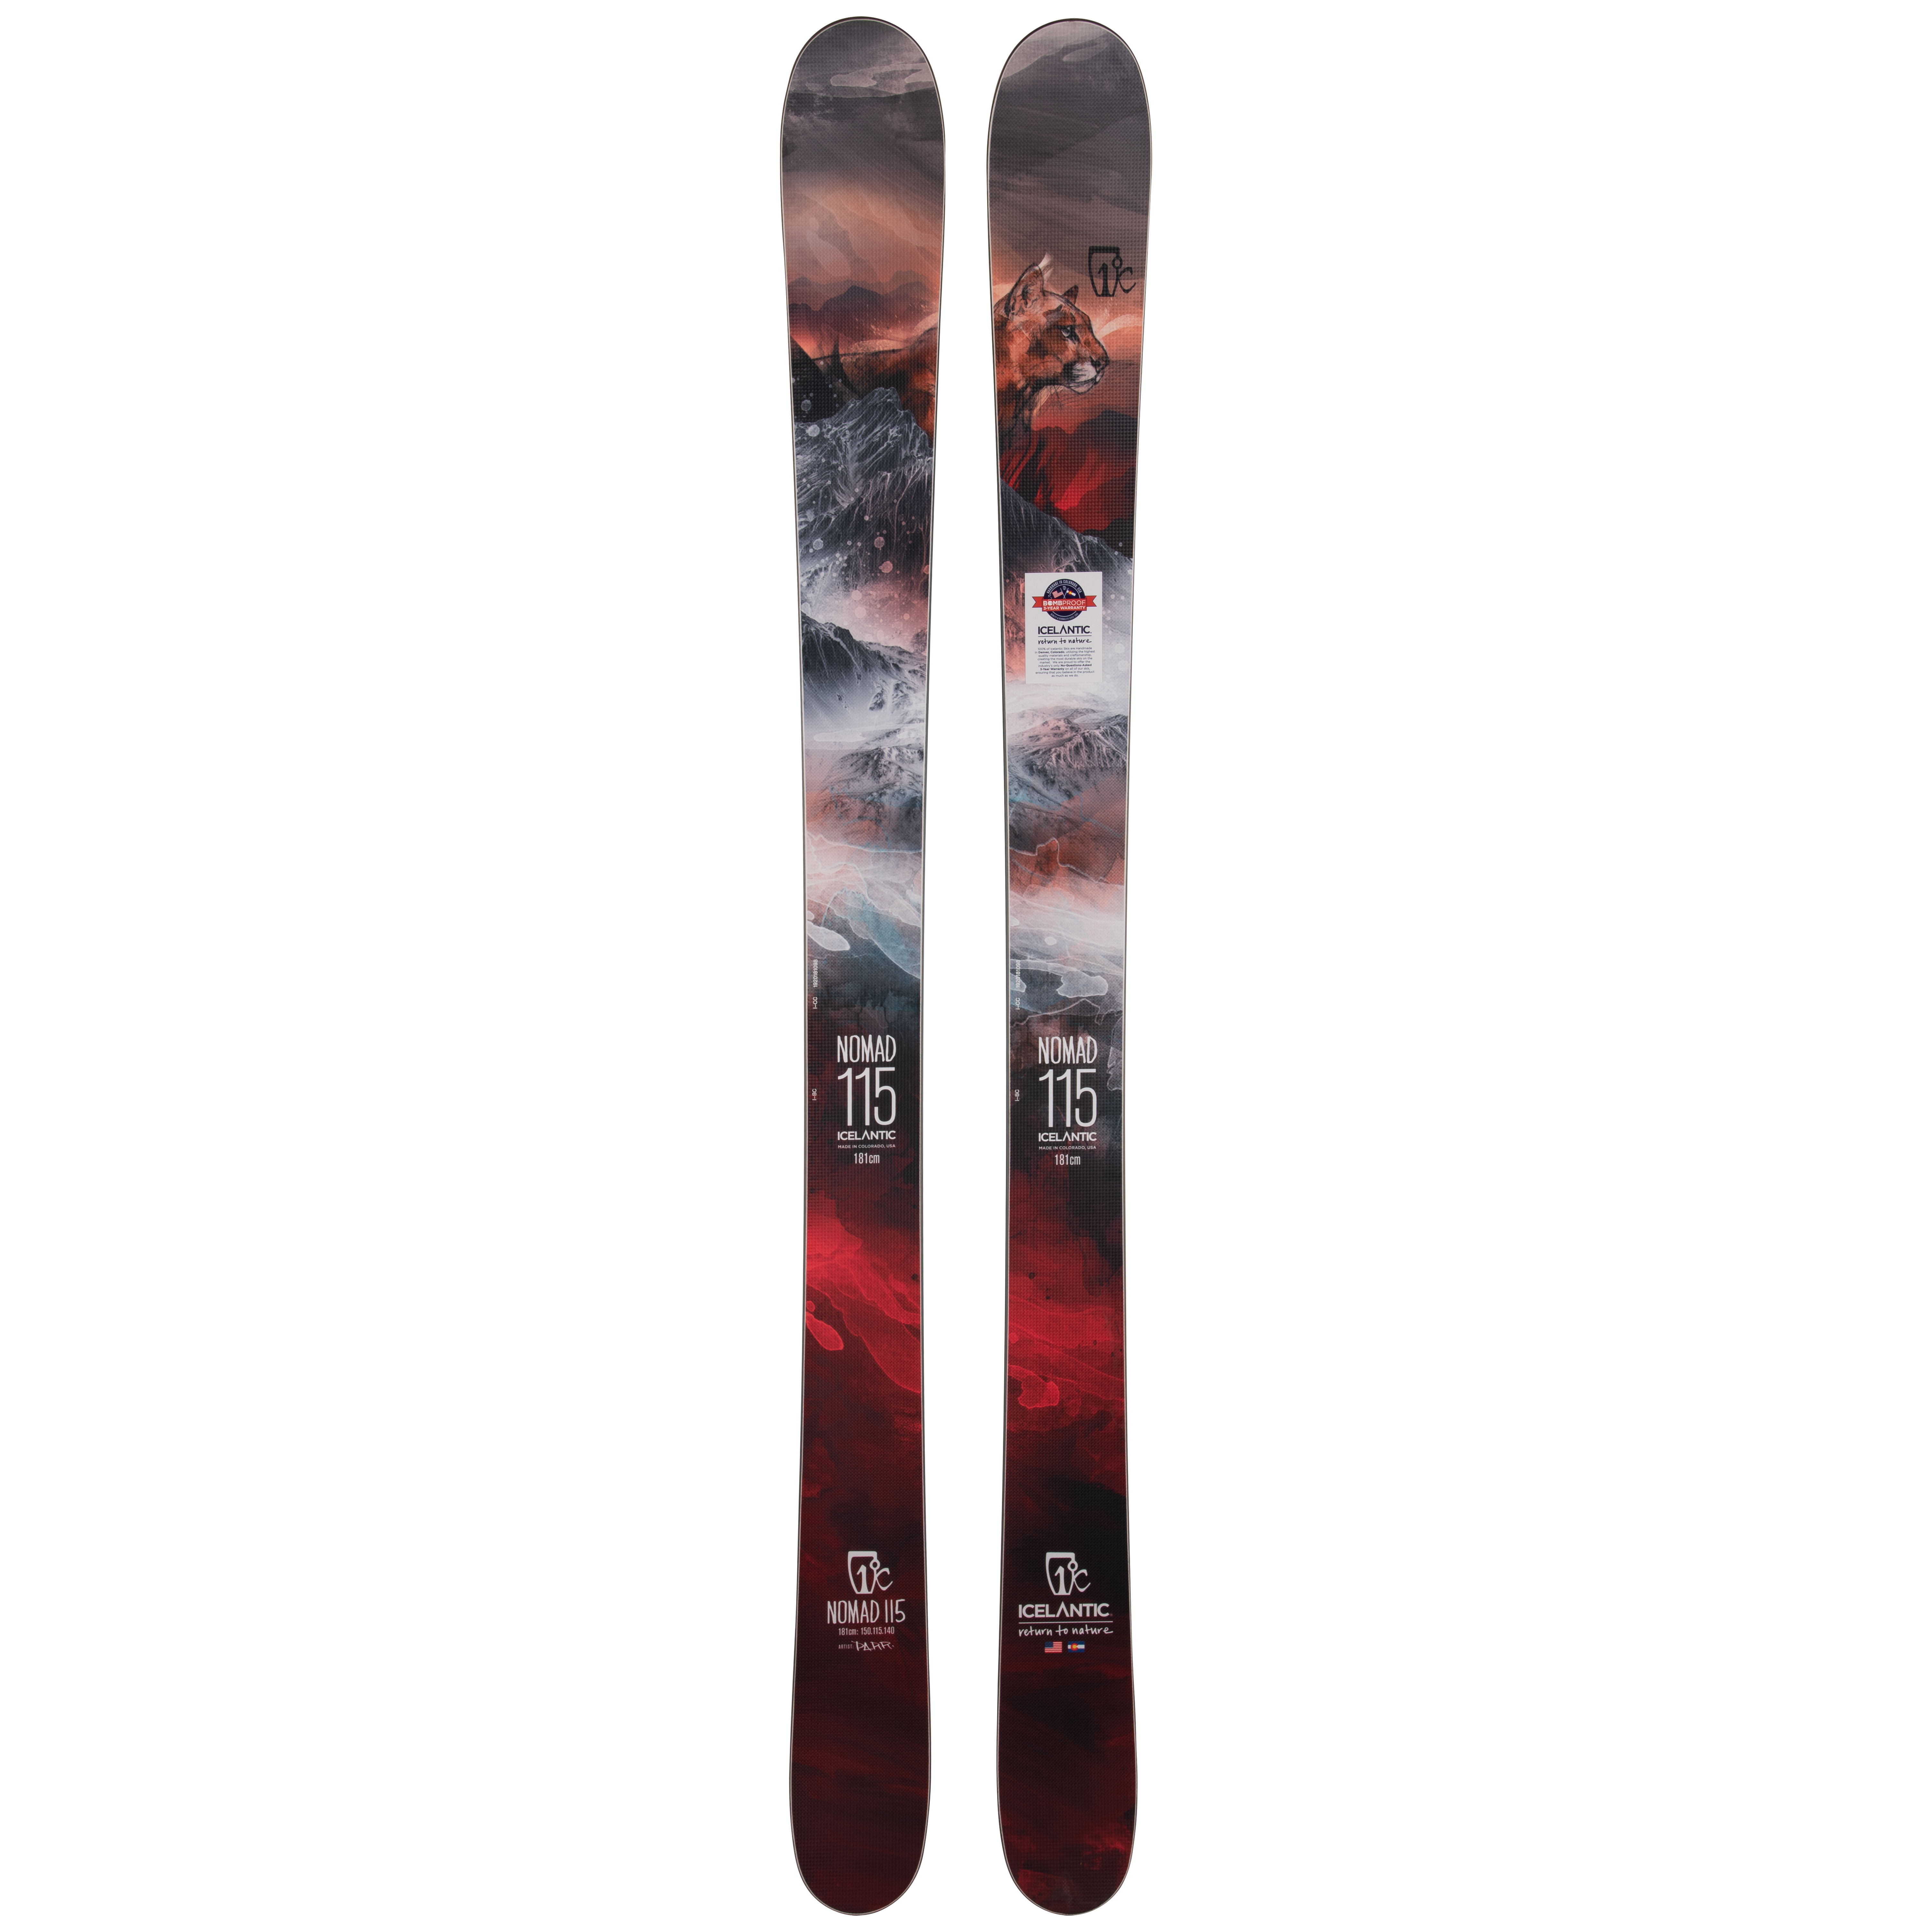 Купить лыжи для бэккантри Icelantic Nomad 115 2019/2020 181cm в Киеве